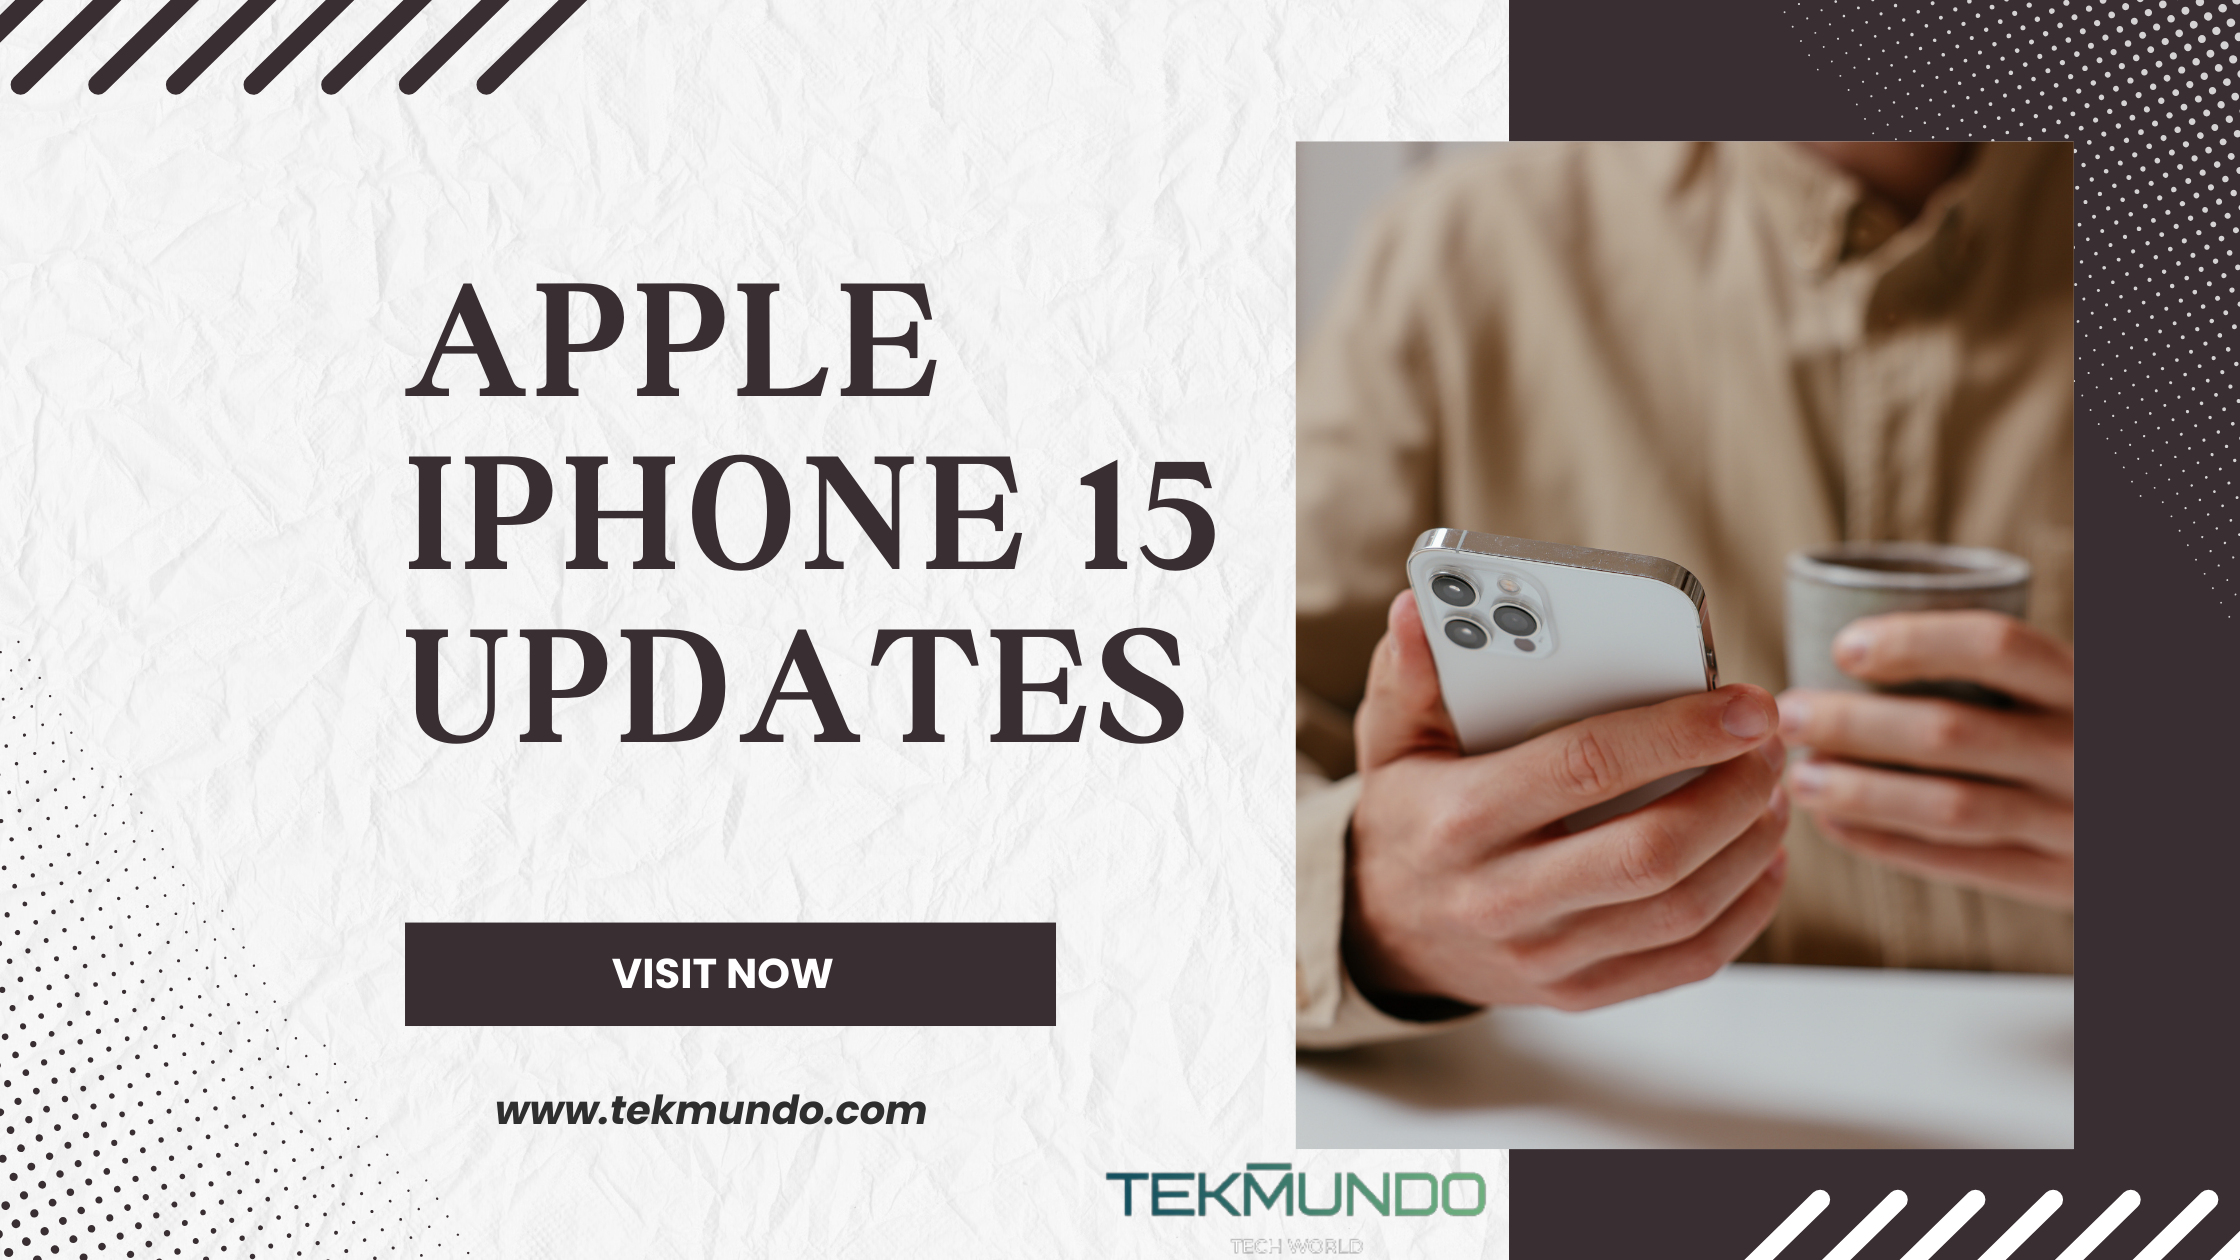 Apple iPhone 15 Updates